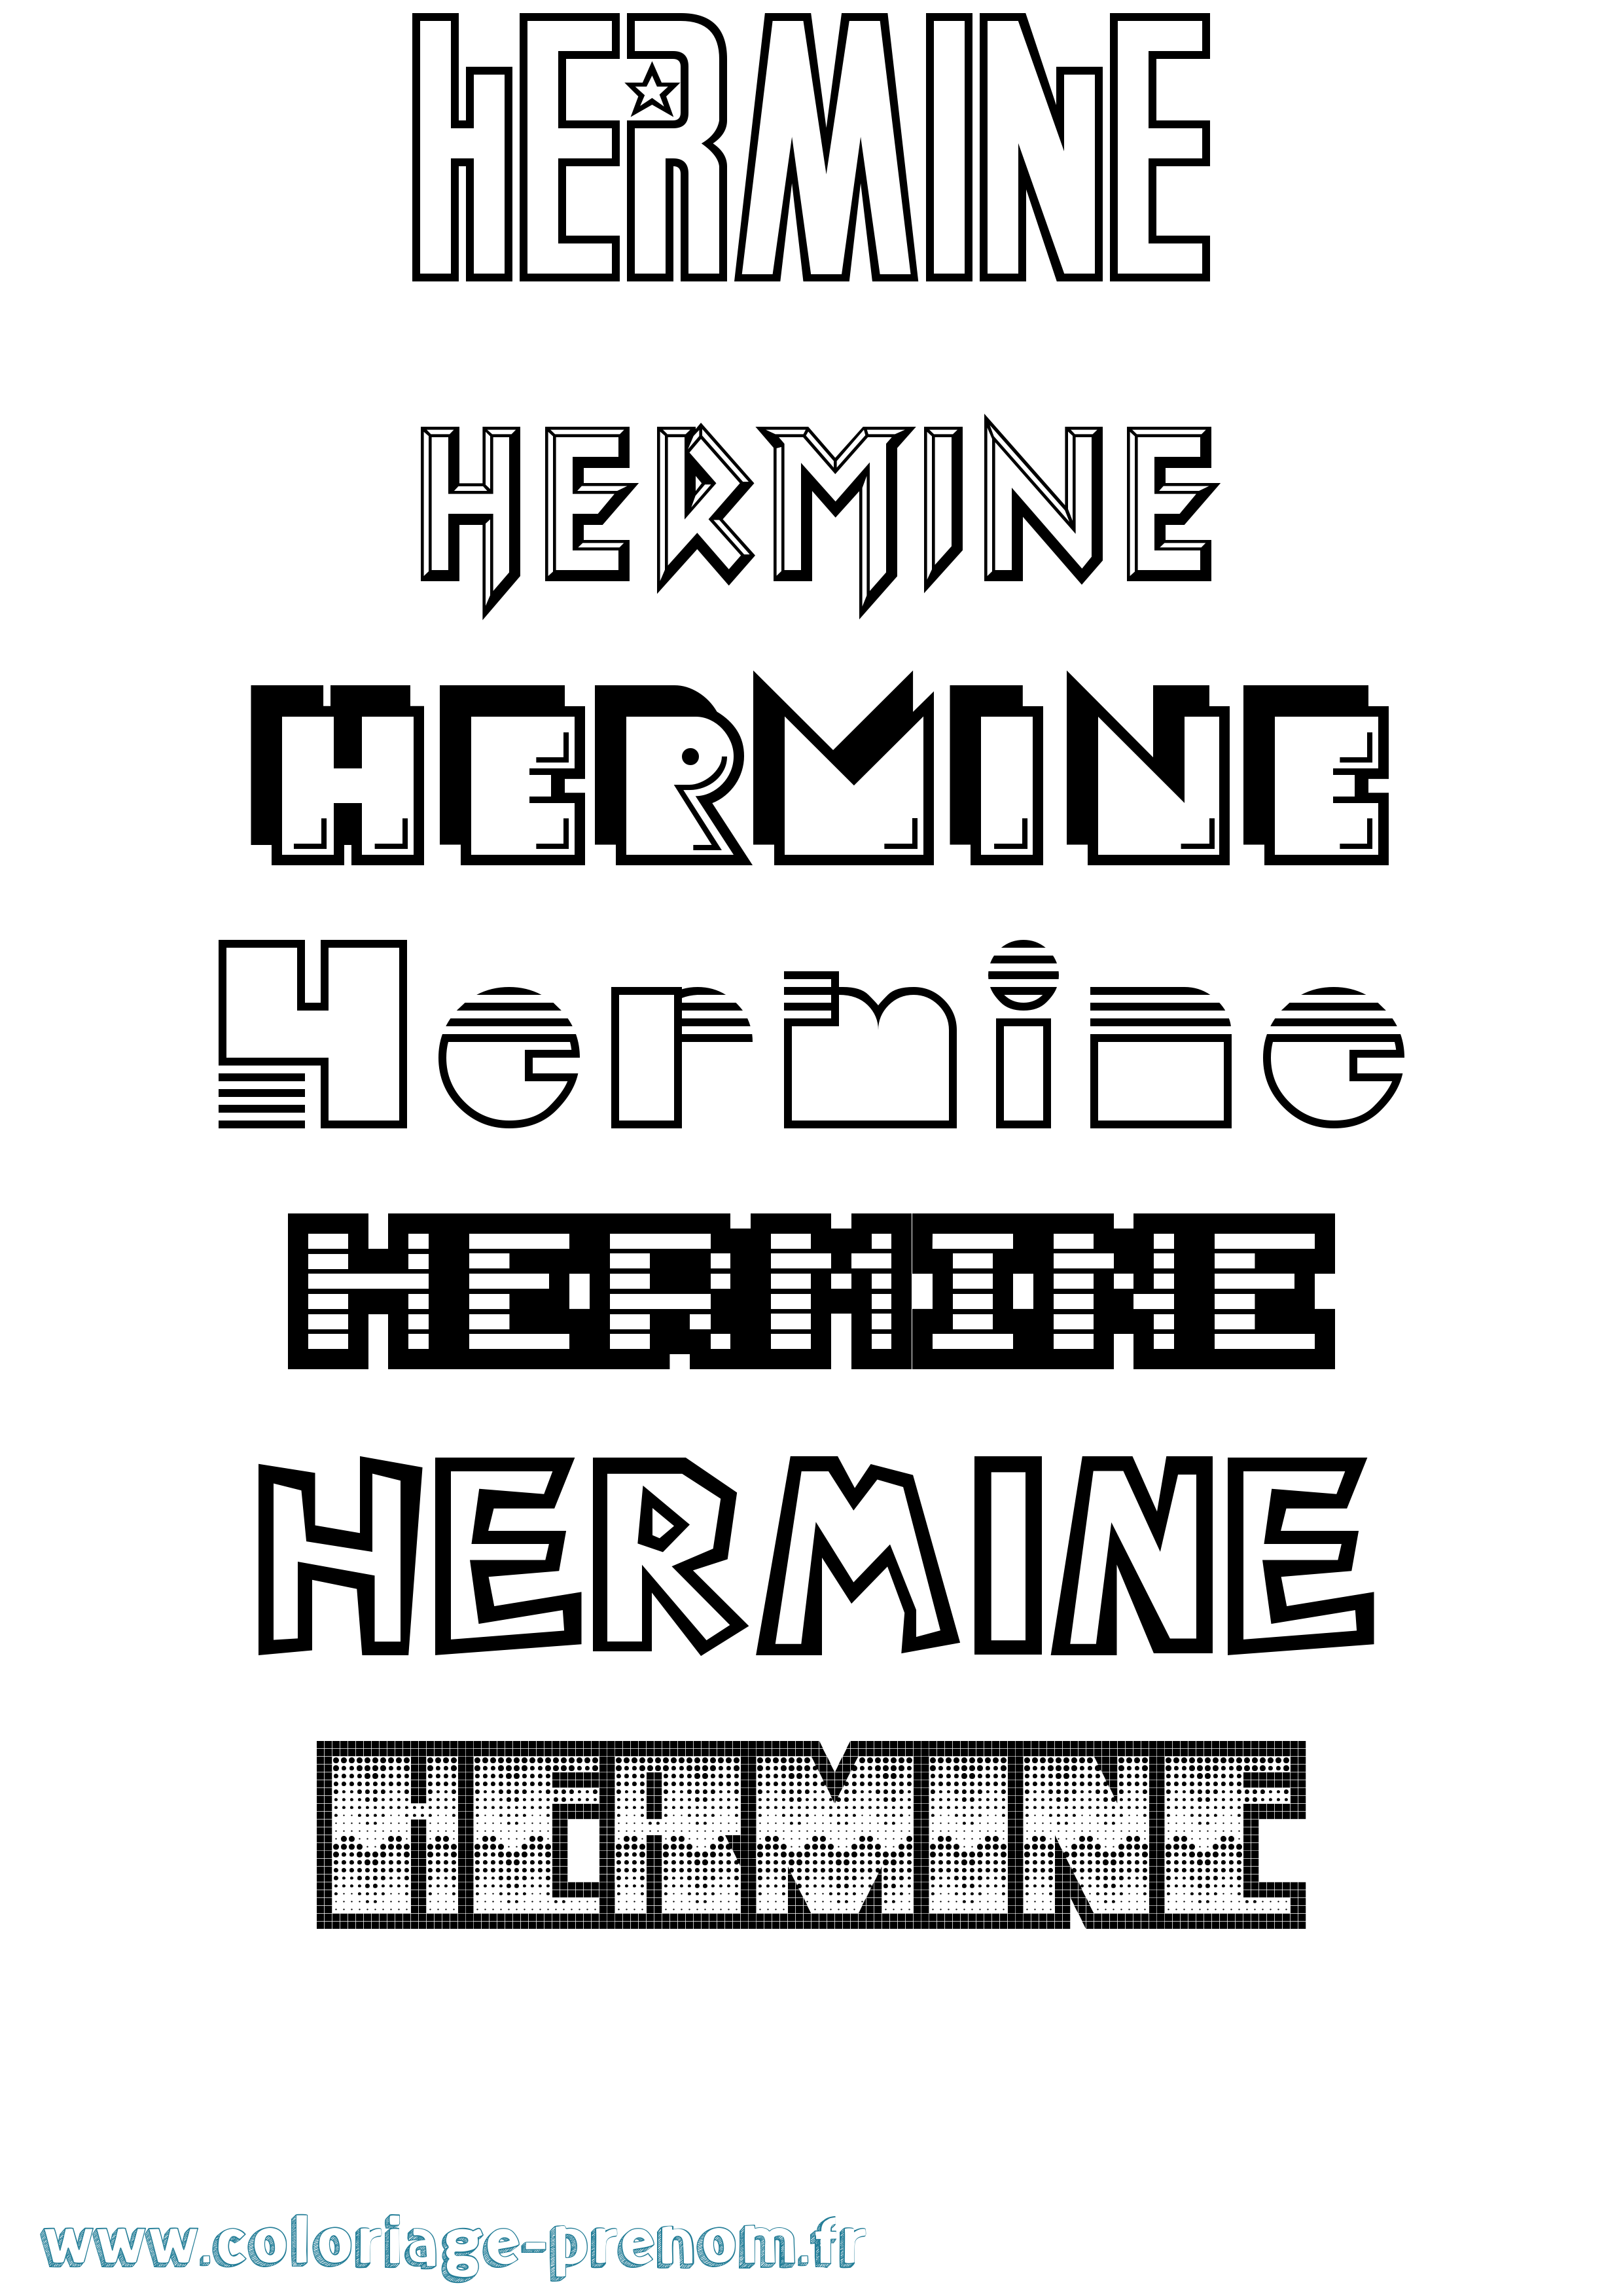 Coloriage prénom Hermine Jeux Vidéos